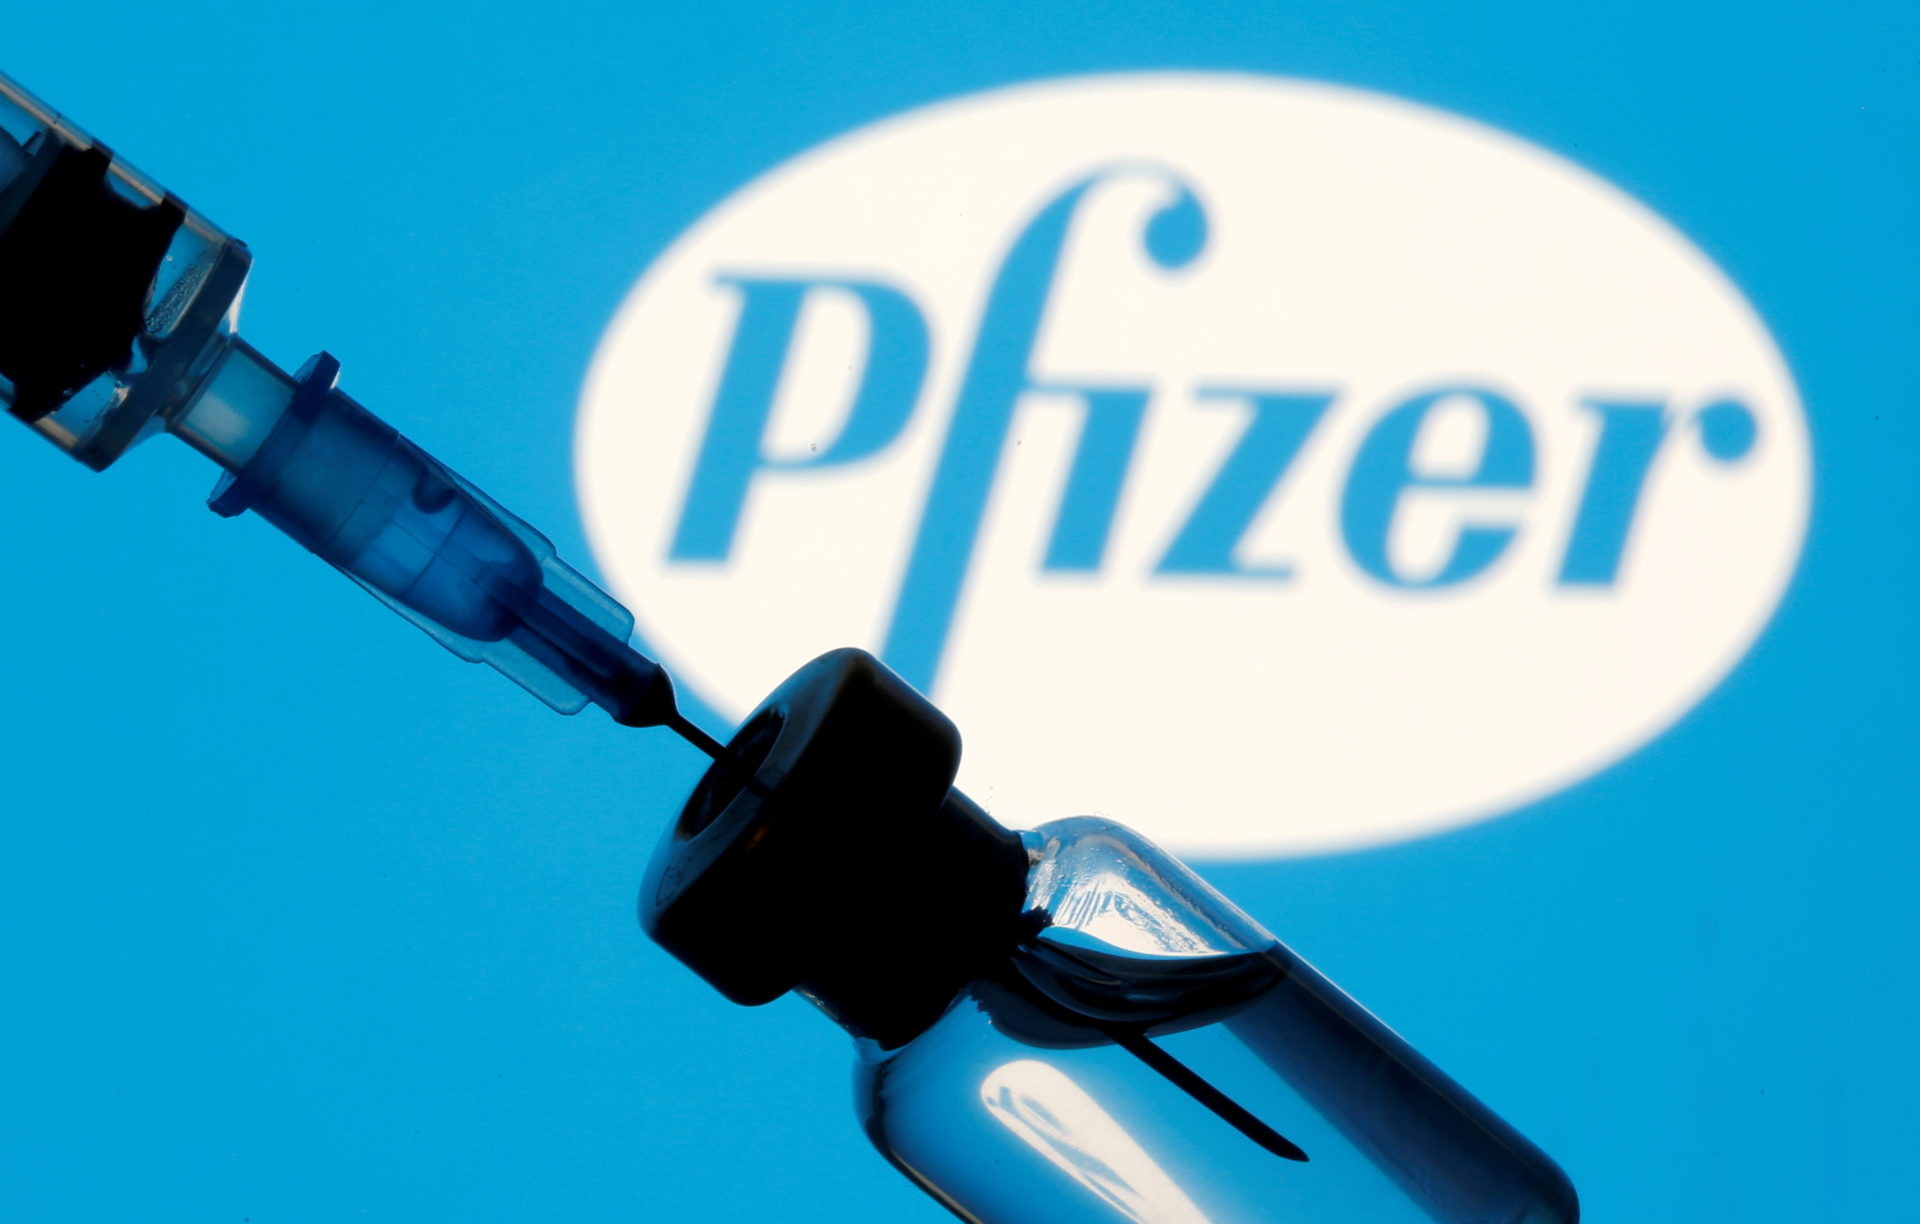 แคนาดาอนุมัติให้ฉีดวัคซีนโควิด-19 ของ Pfizer แก่เด็กประถม